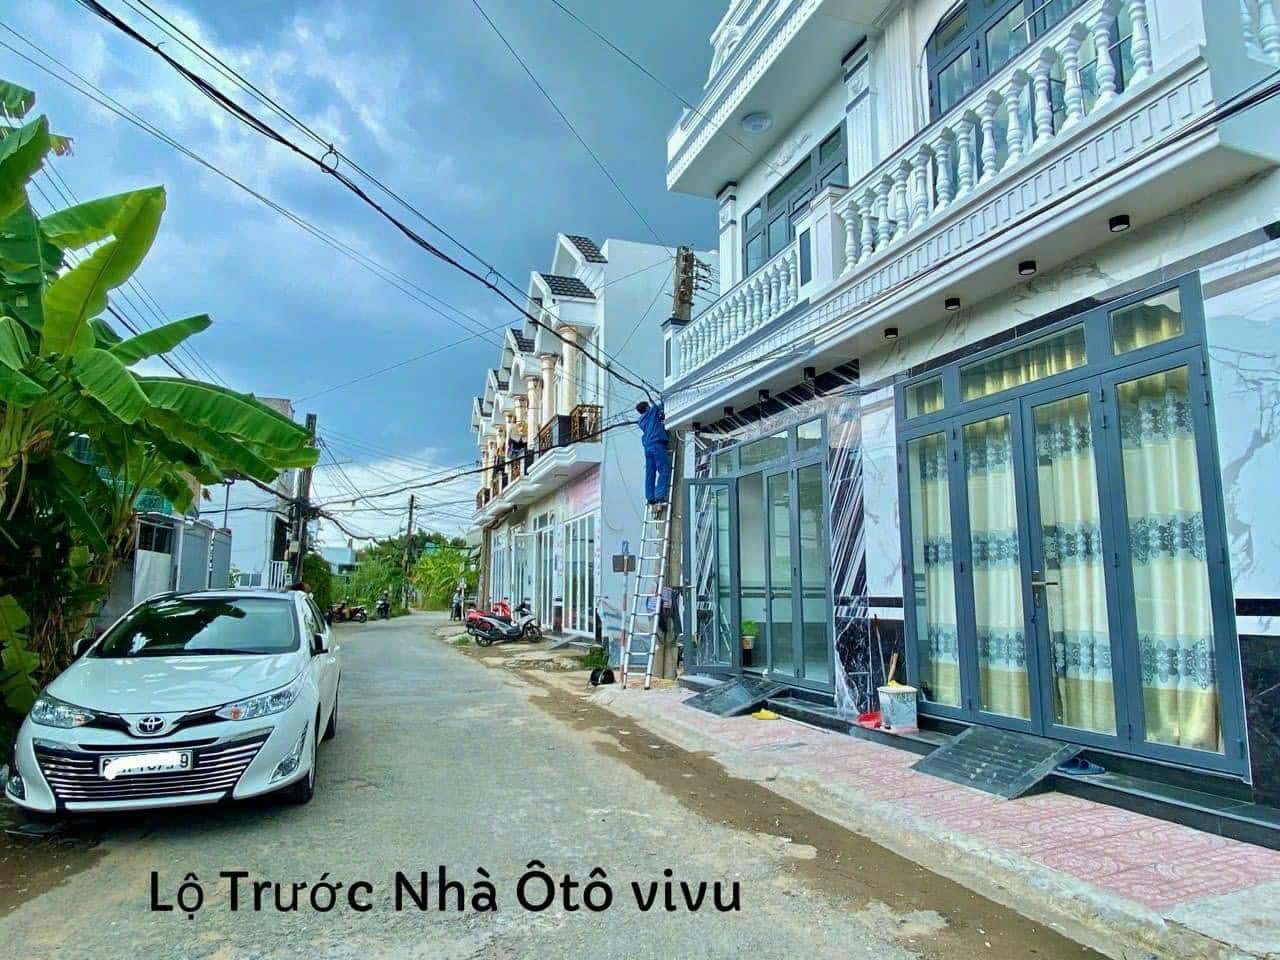 Nhà trệt lầu hoàn công - trục chính khu dân cư 3A - Ninh Kiều - Cần Thơ